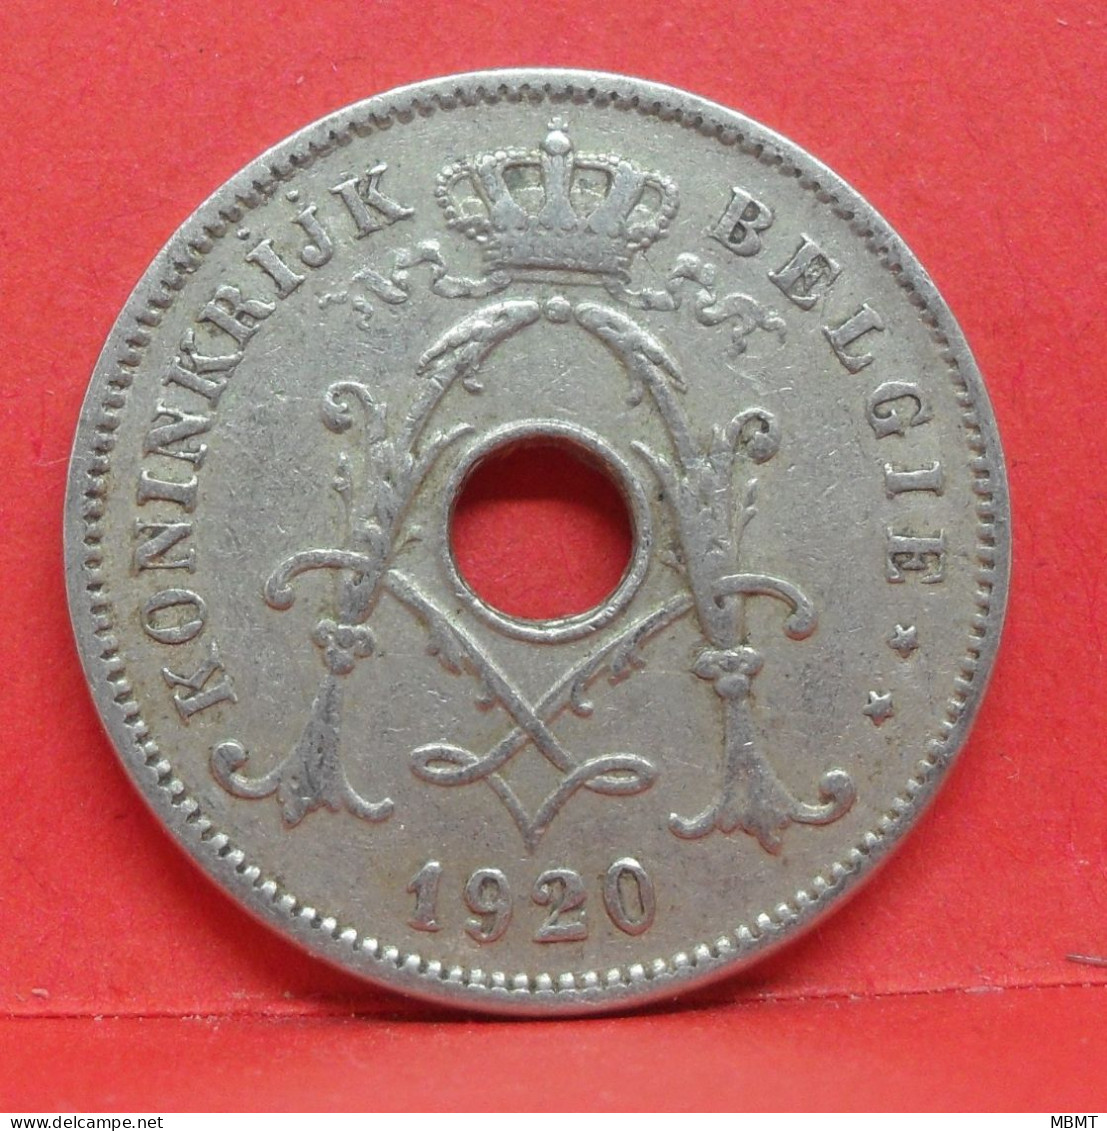 10 Centimes 1920 - TB - Pièce Monnaie Belgie - Article N°1859 - 10 Cents